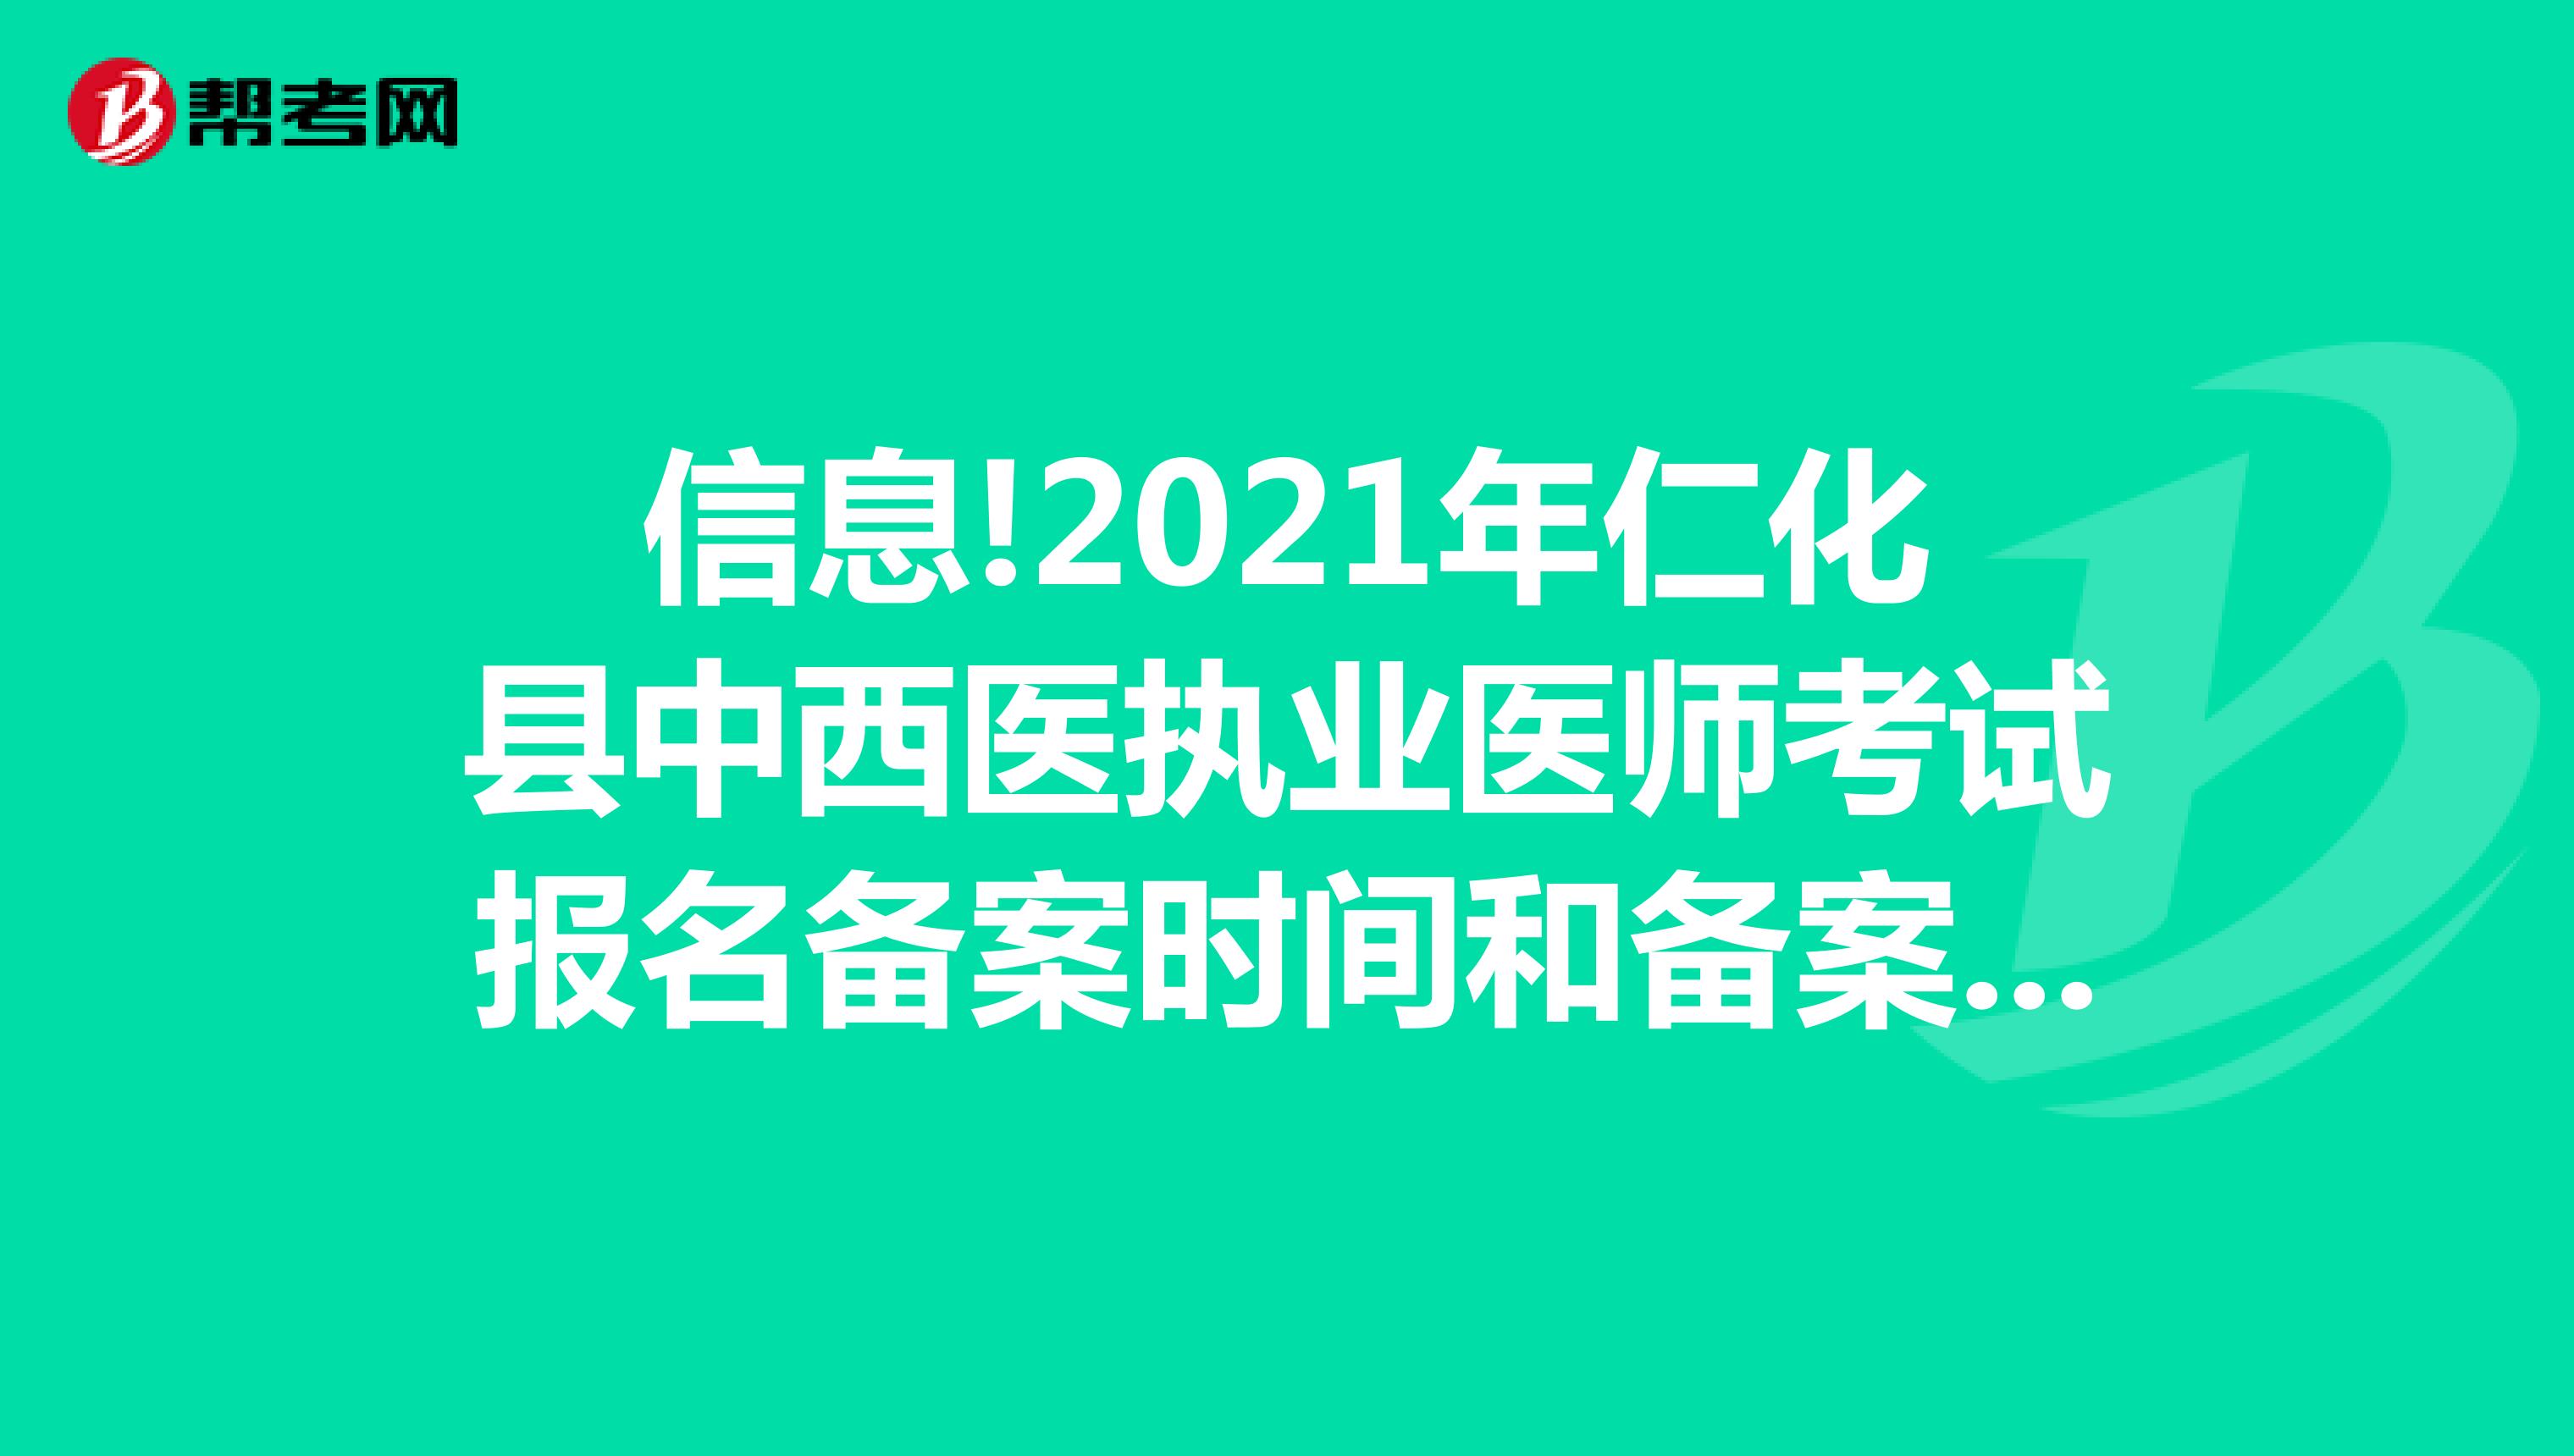 信息!2021年仁化县中西医执业医师考试报名备案时间和备案要求有哪些呢？